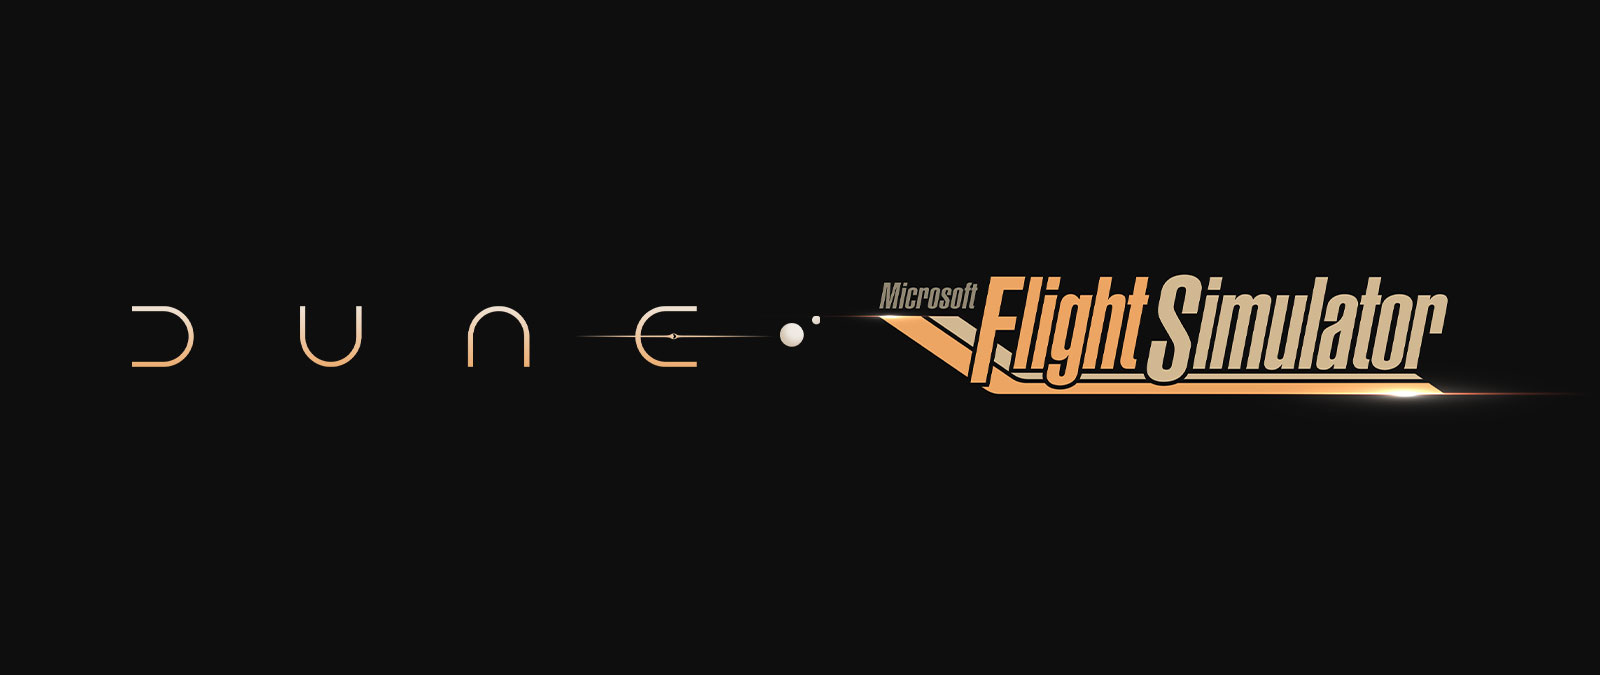 Logotipo de la película Dune, logotipo de Microsoft Flight Simulator